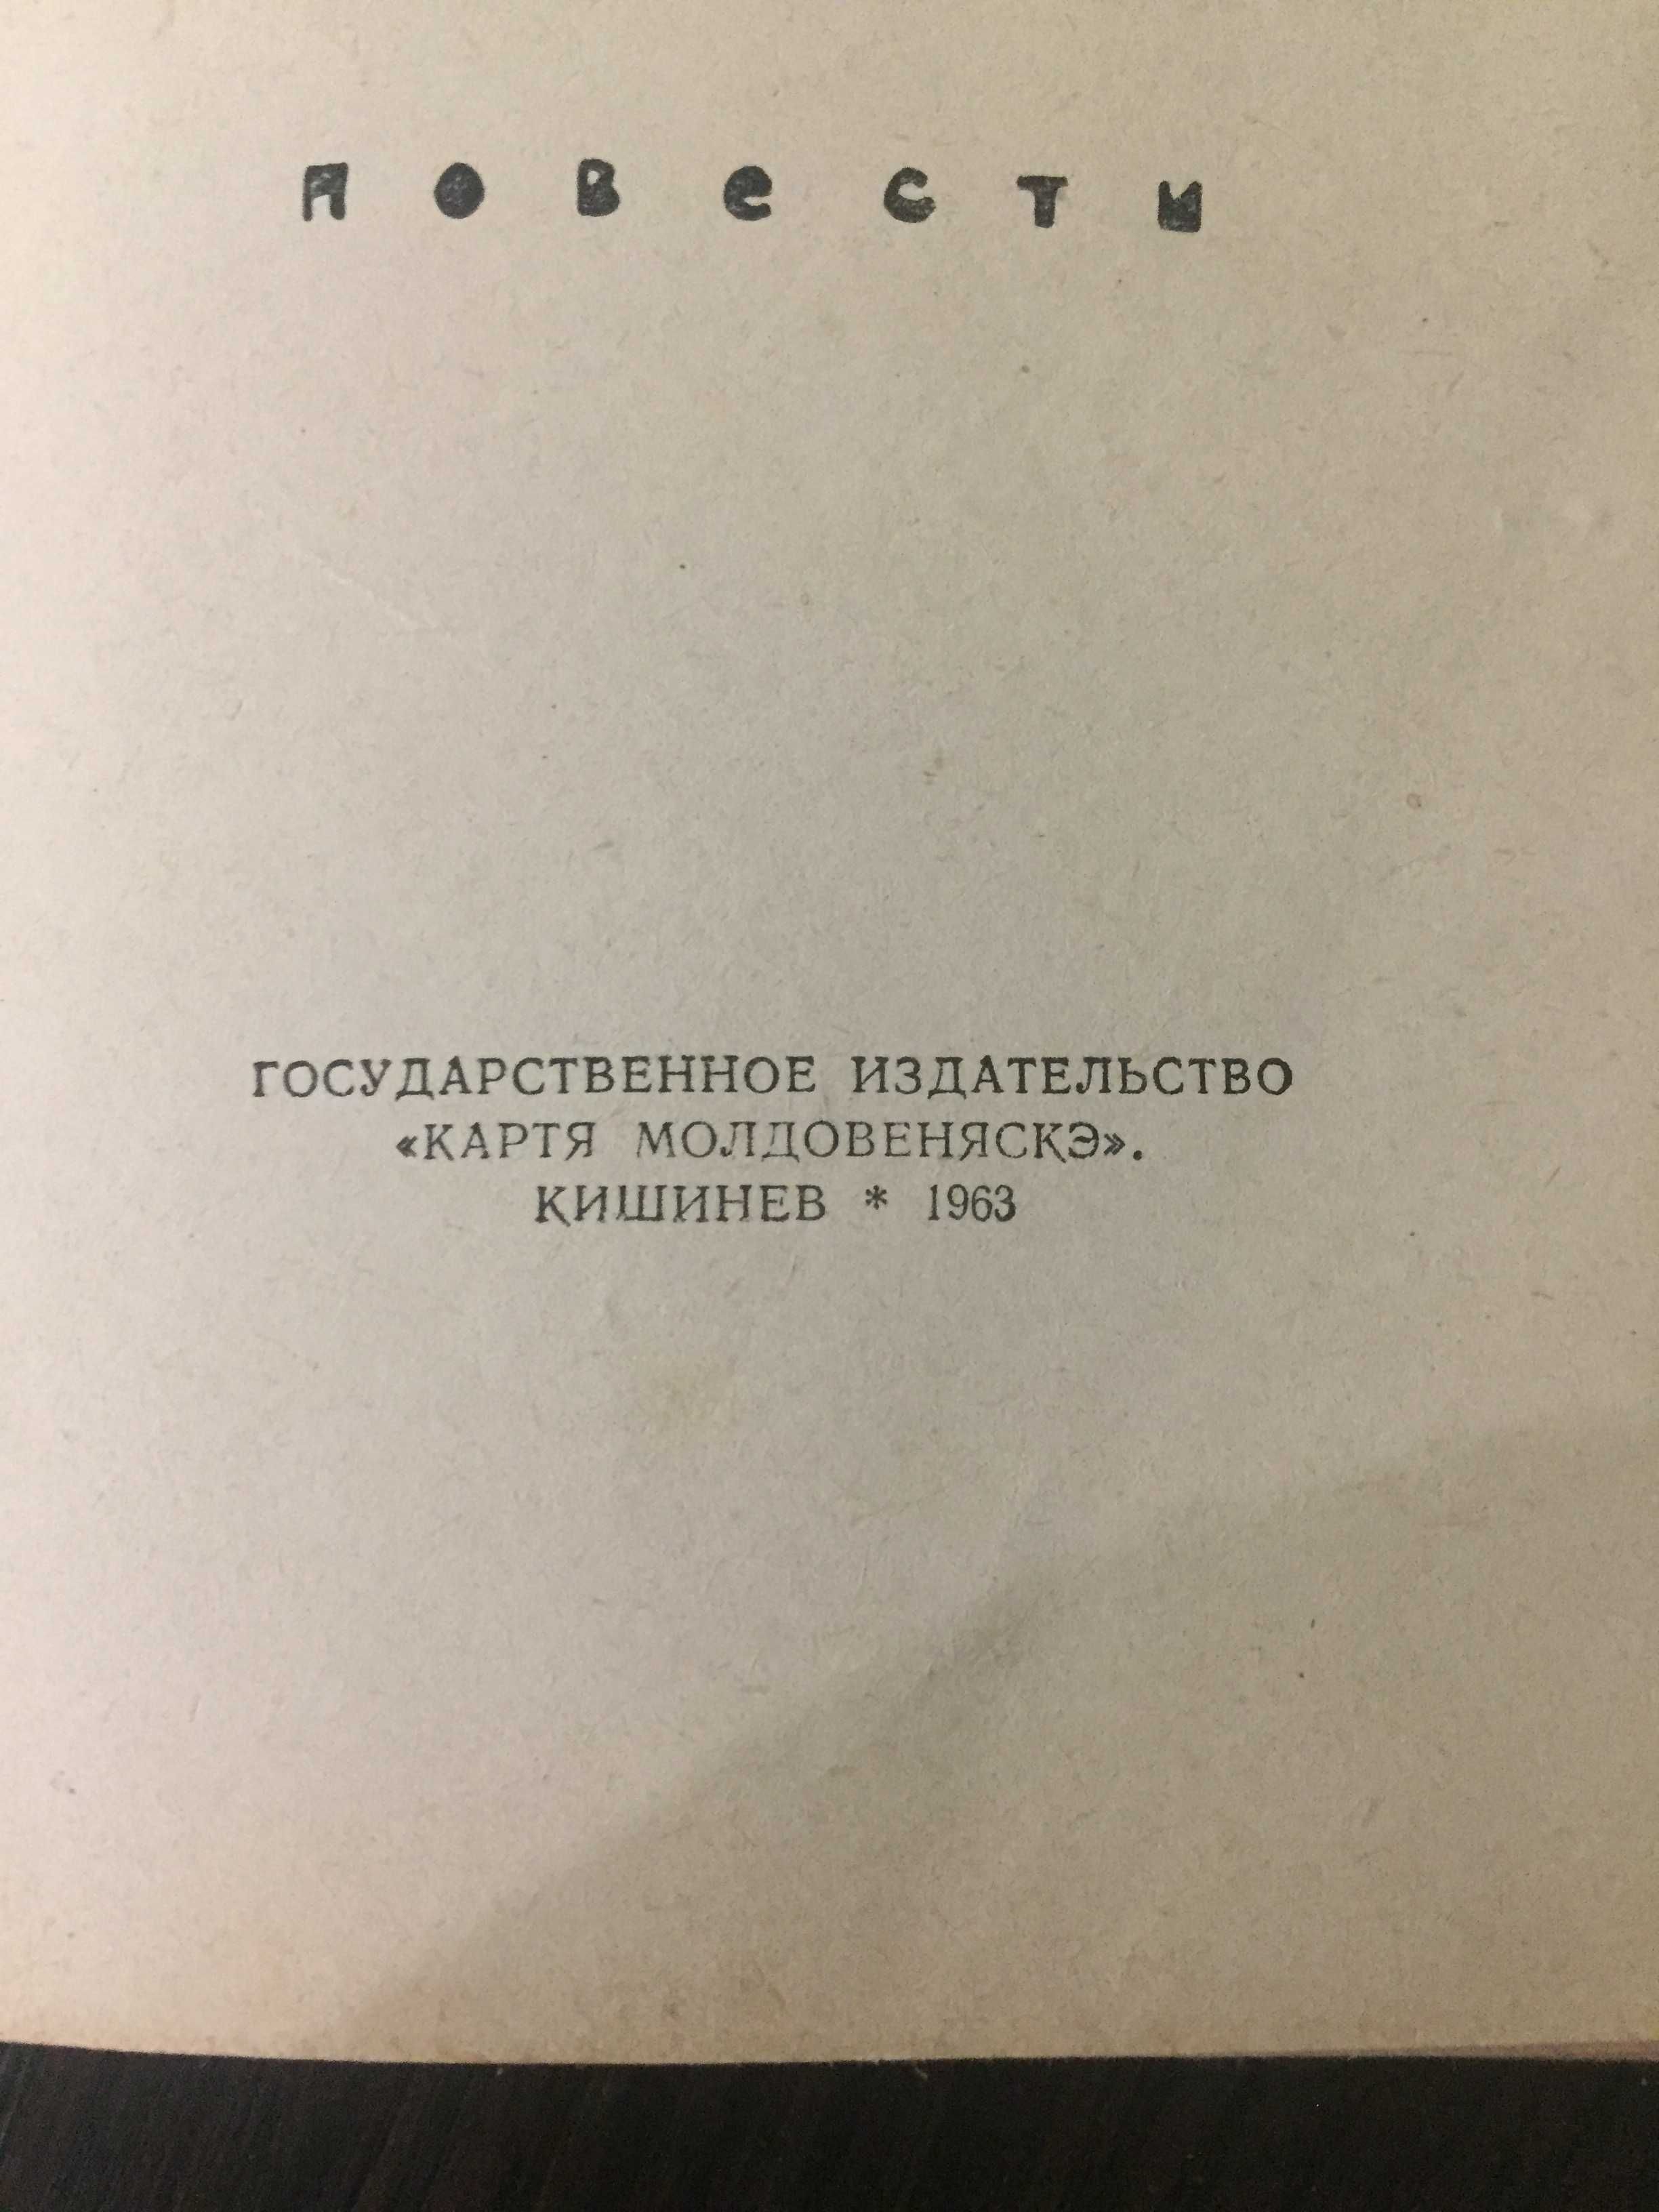 Ариадна Шаларь «Люди и судьбы», 1963г., русский язык